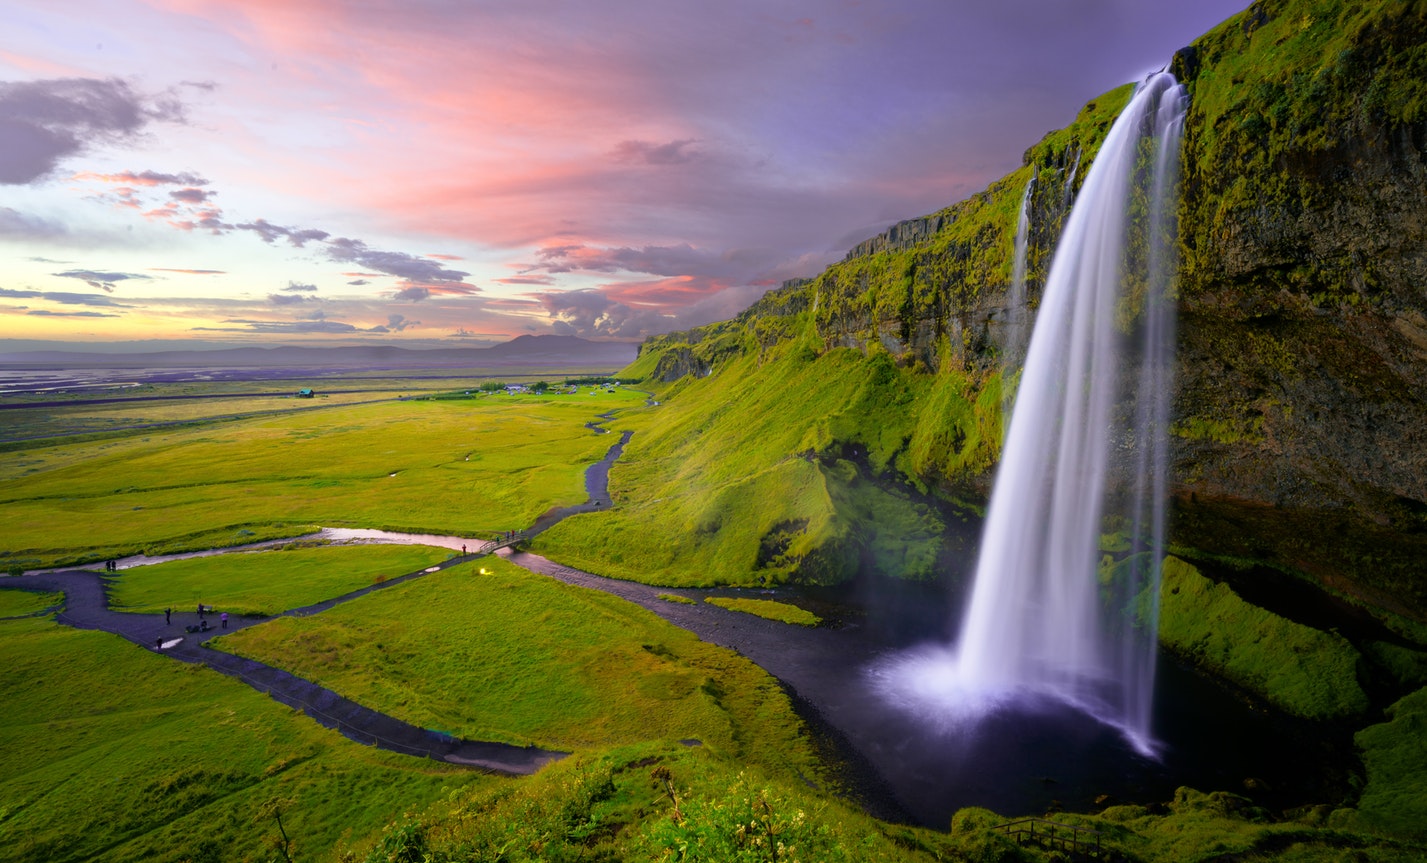 Seljalandsfoss - daya daga cikin shahararrun ruwa a Iceland